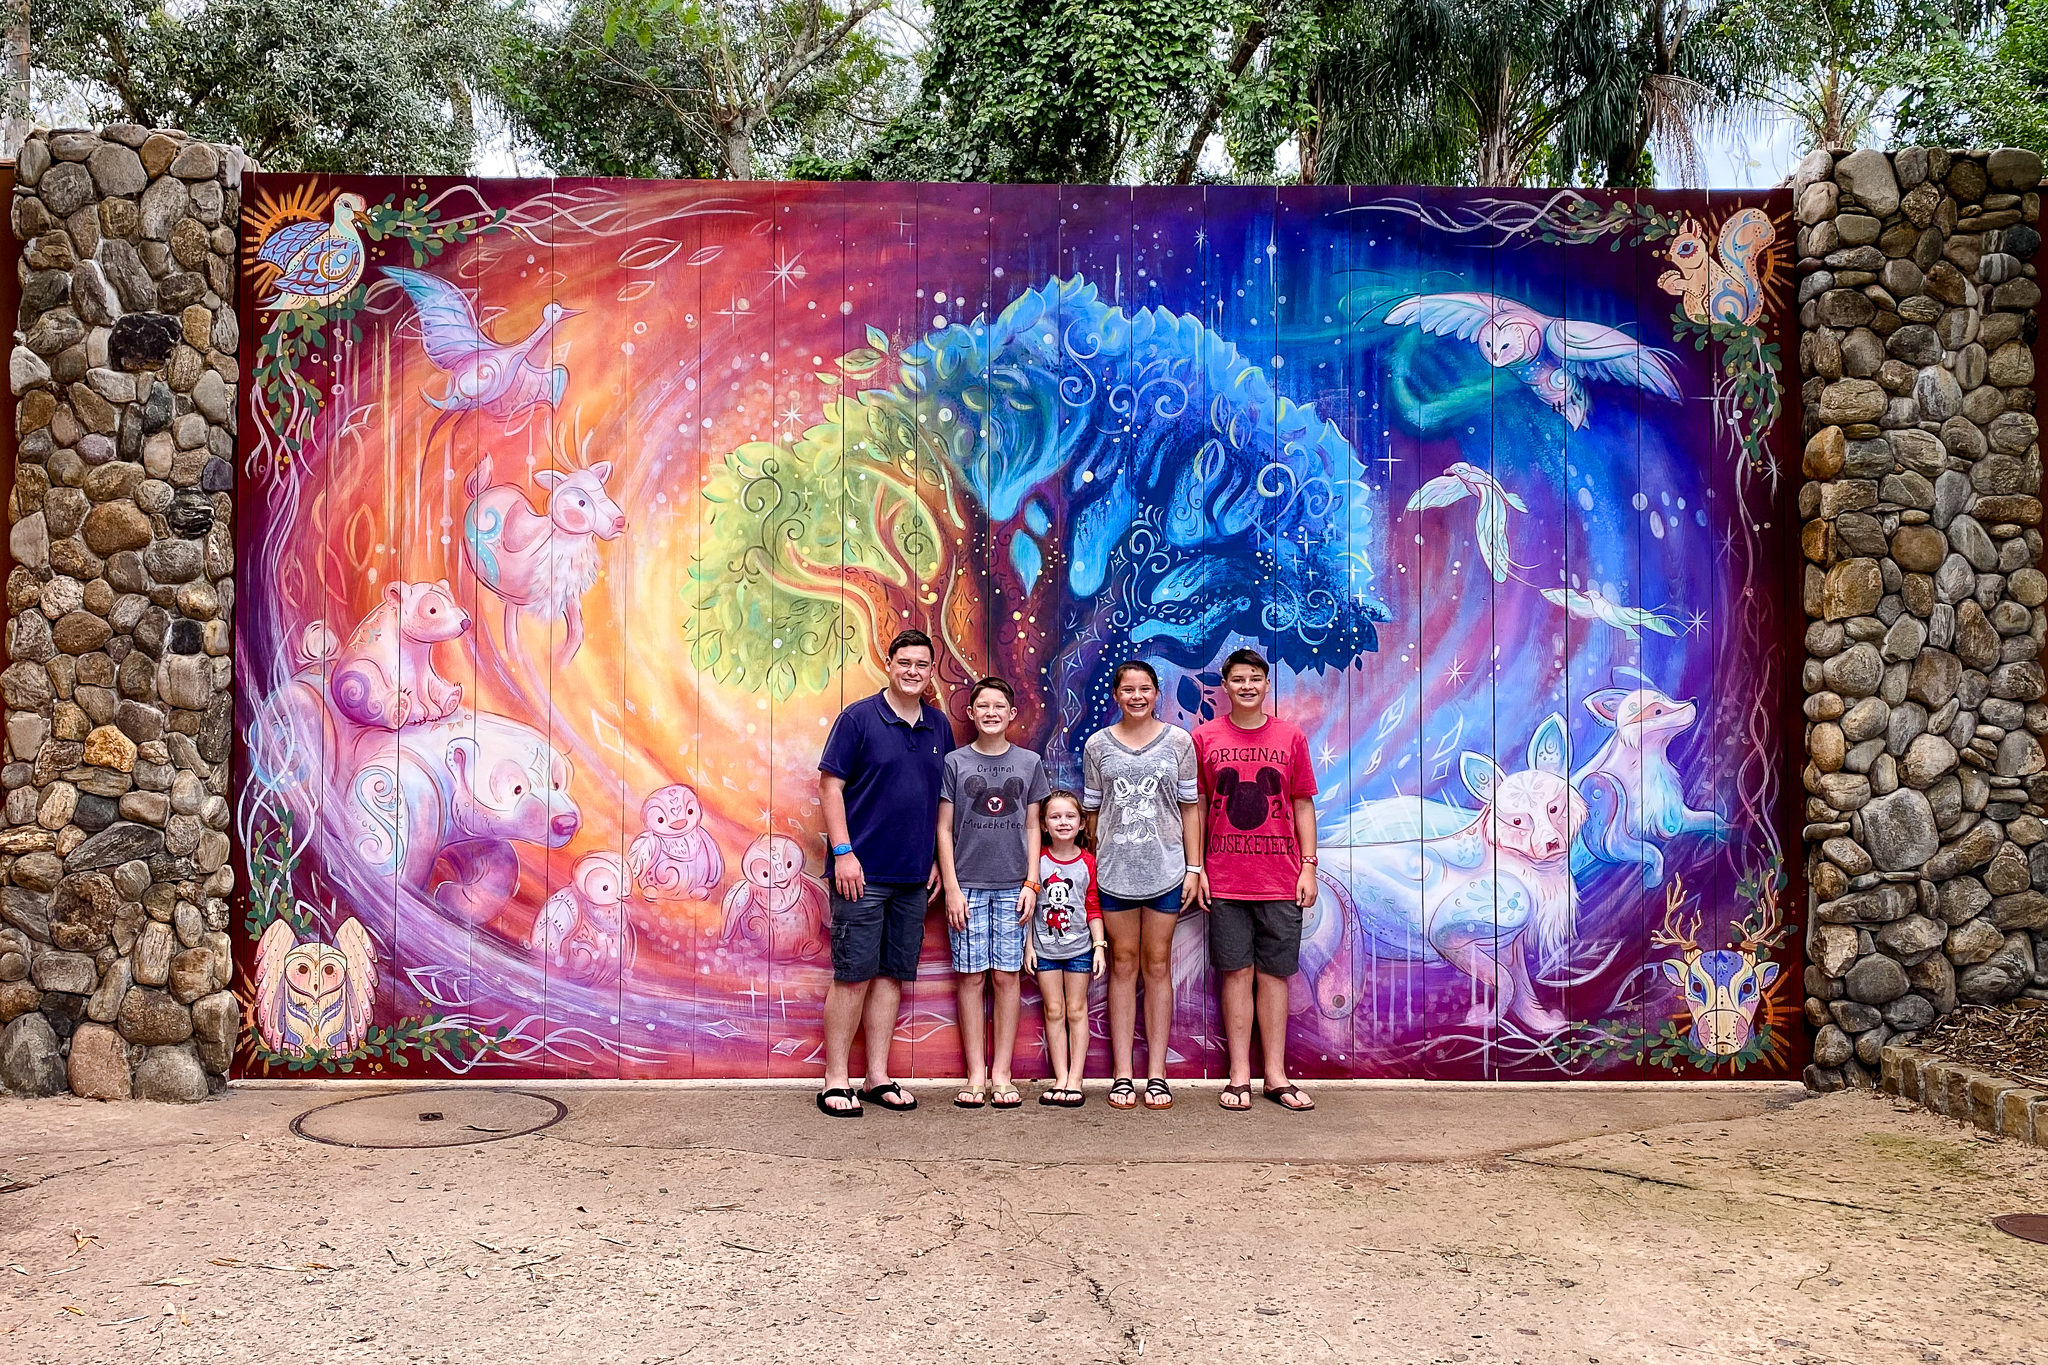 Holiday mural at animal kingdom